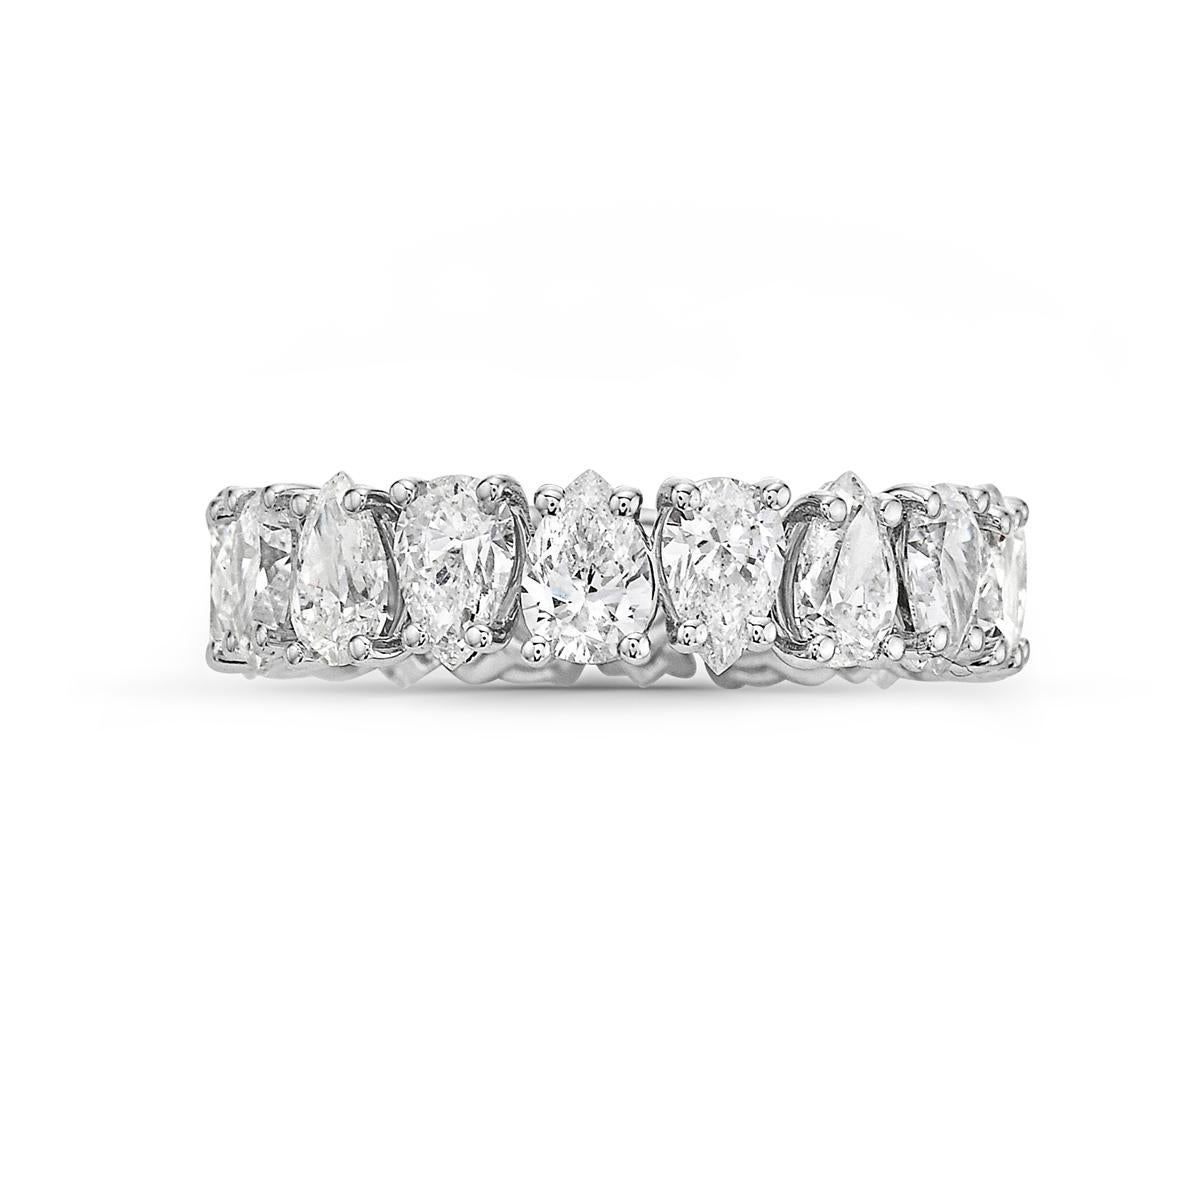 Ce bracelet d'éternité en diamant présente 20 diamants de forme poire F VVS pesant environ 4,84 carats sertis dans de l'or blanc 18k. Taille 7. 